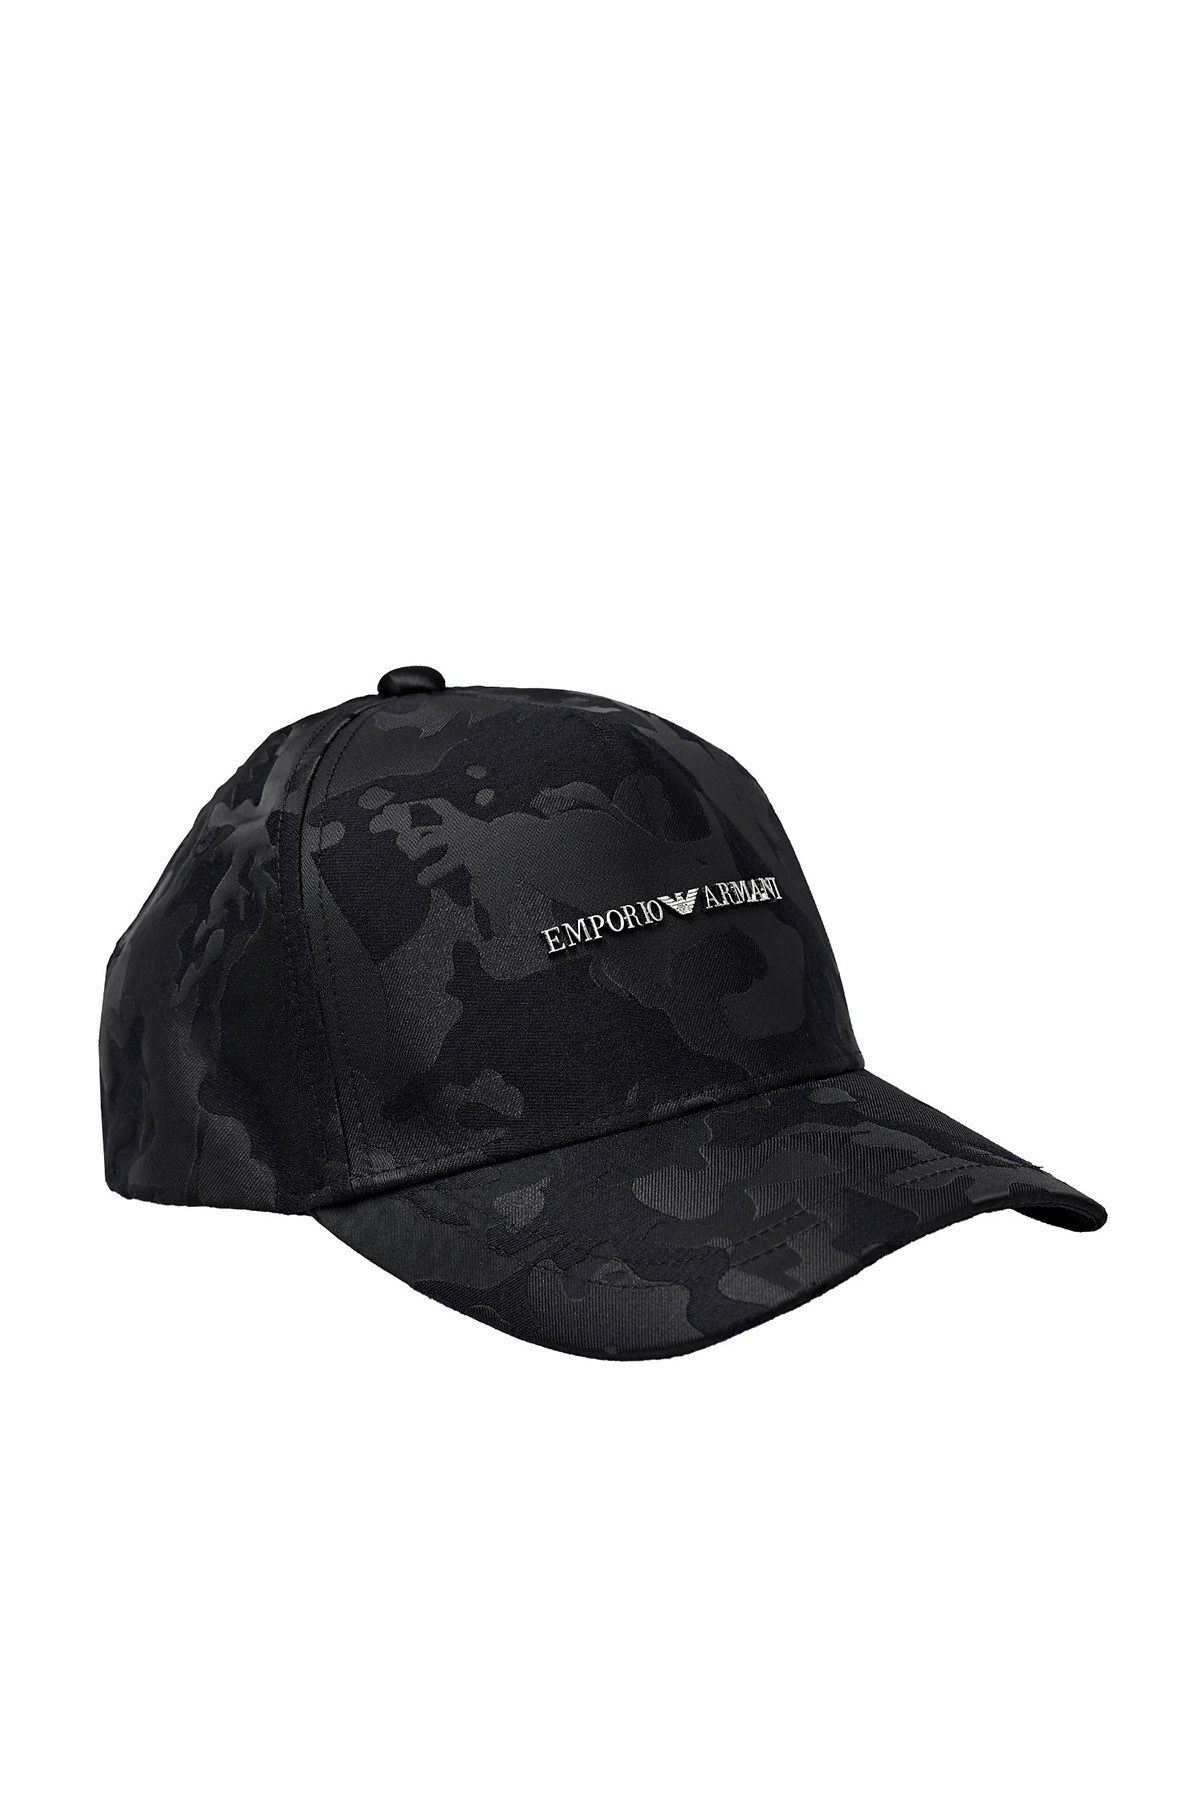 Emporio Armani Logo Baskılı Erkek Şapka 627565 1P555 00120 SİYAH